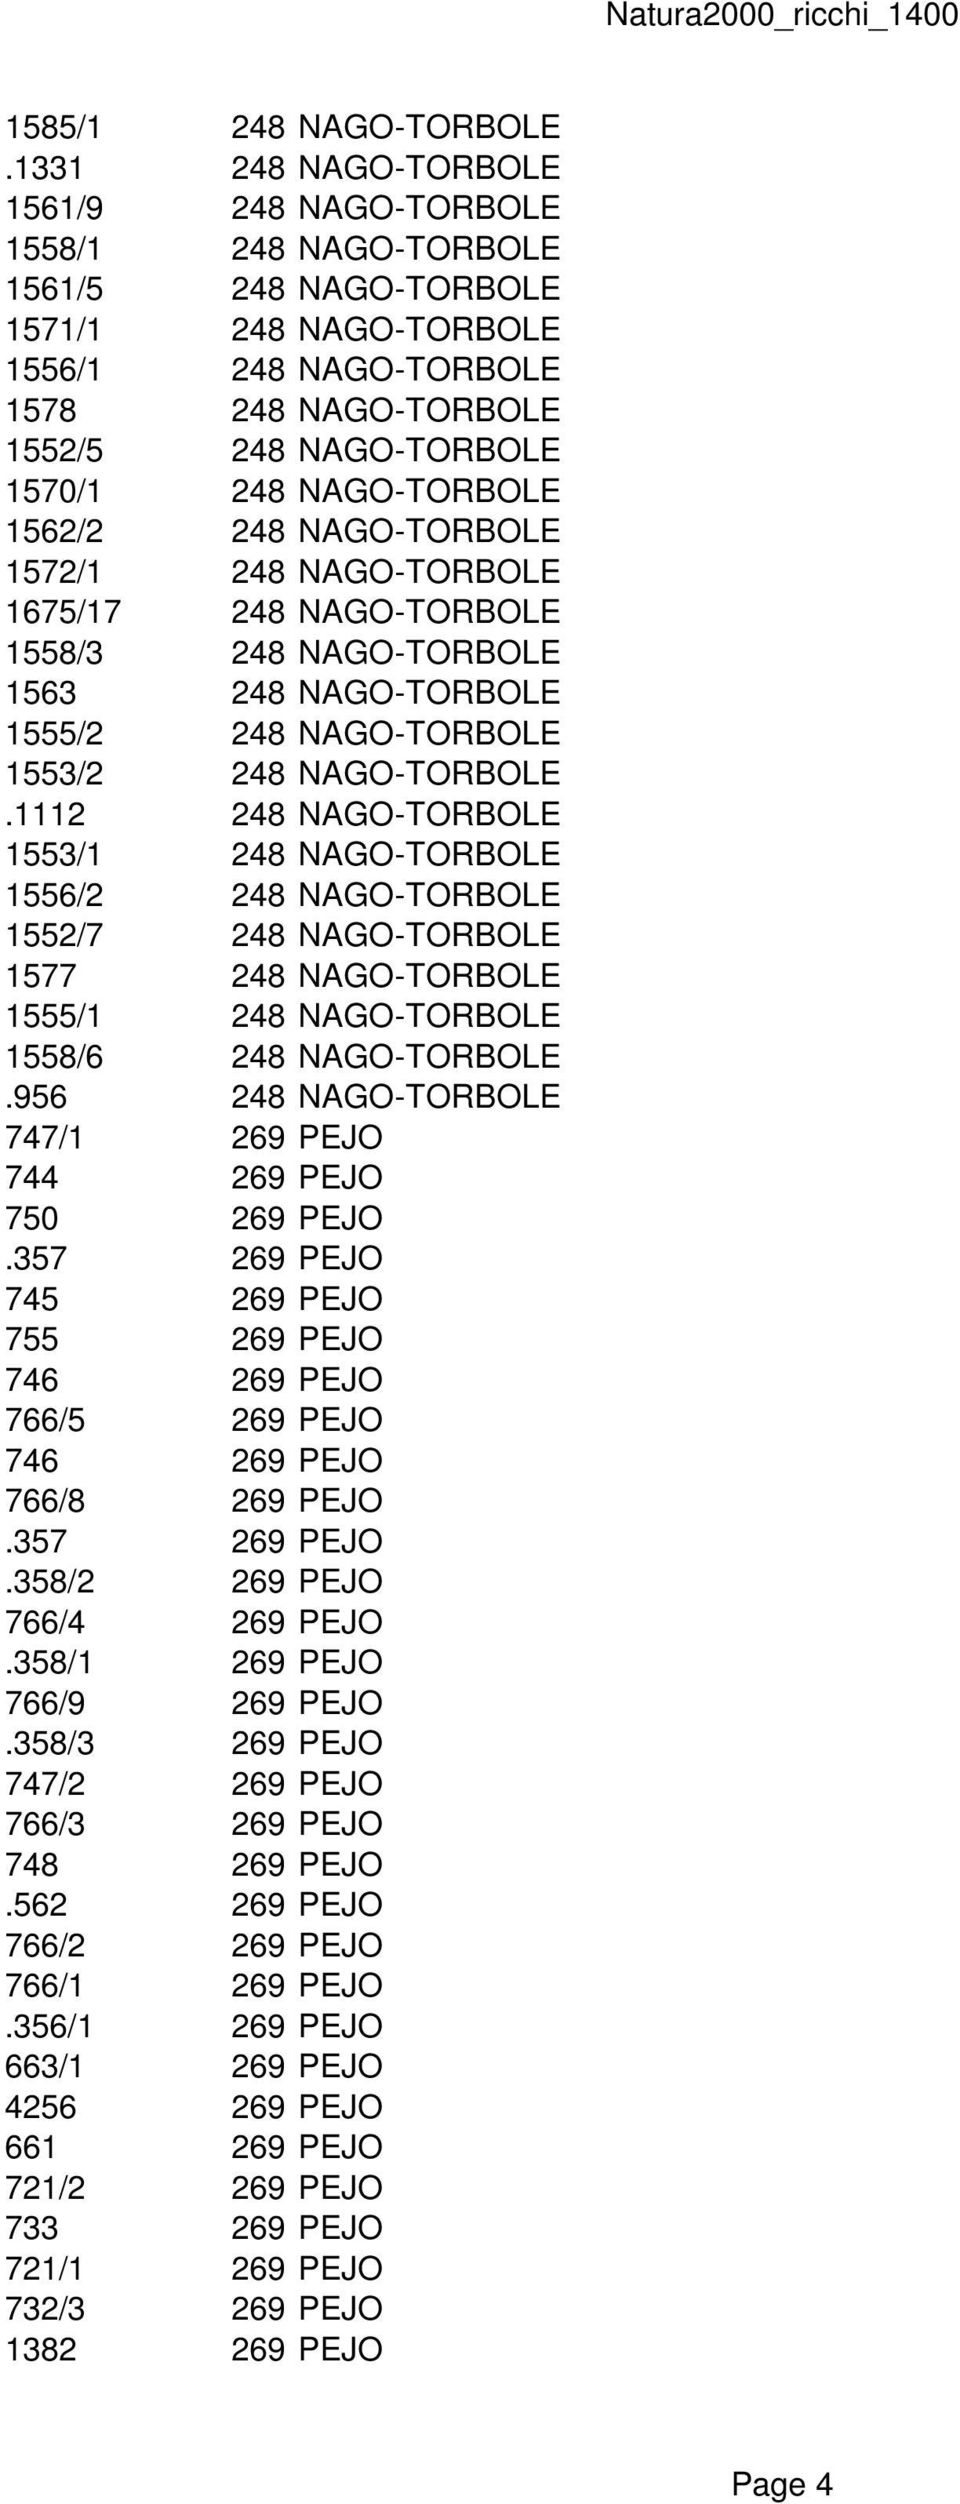 NAGO-TORBOLE 1562/2 248 NAGO-TORBOLE 1572/1 248 NAGO-TORBOLE 1675/17 248 NAGO-TORBOLE 1558/3 248 NAGO-TORBOLE 1563 248 NAGO-TORBOLE 1555/2 248 NAGO-TORBOLE 1553/2 248 NAGO-TORBOLE.